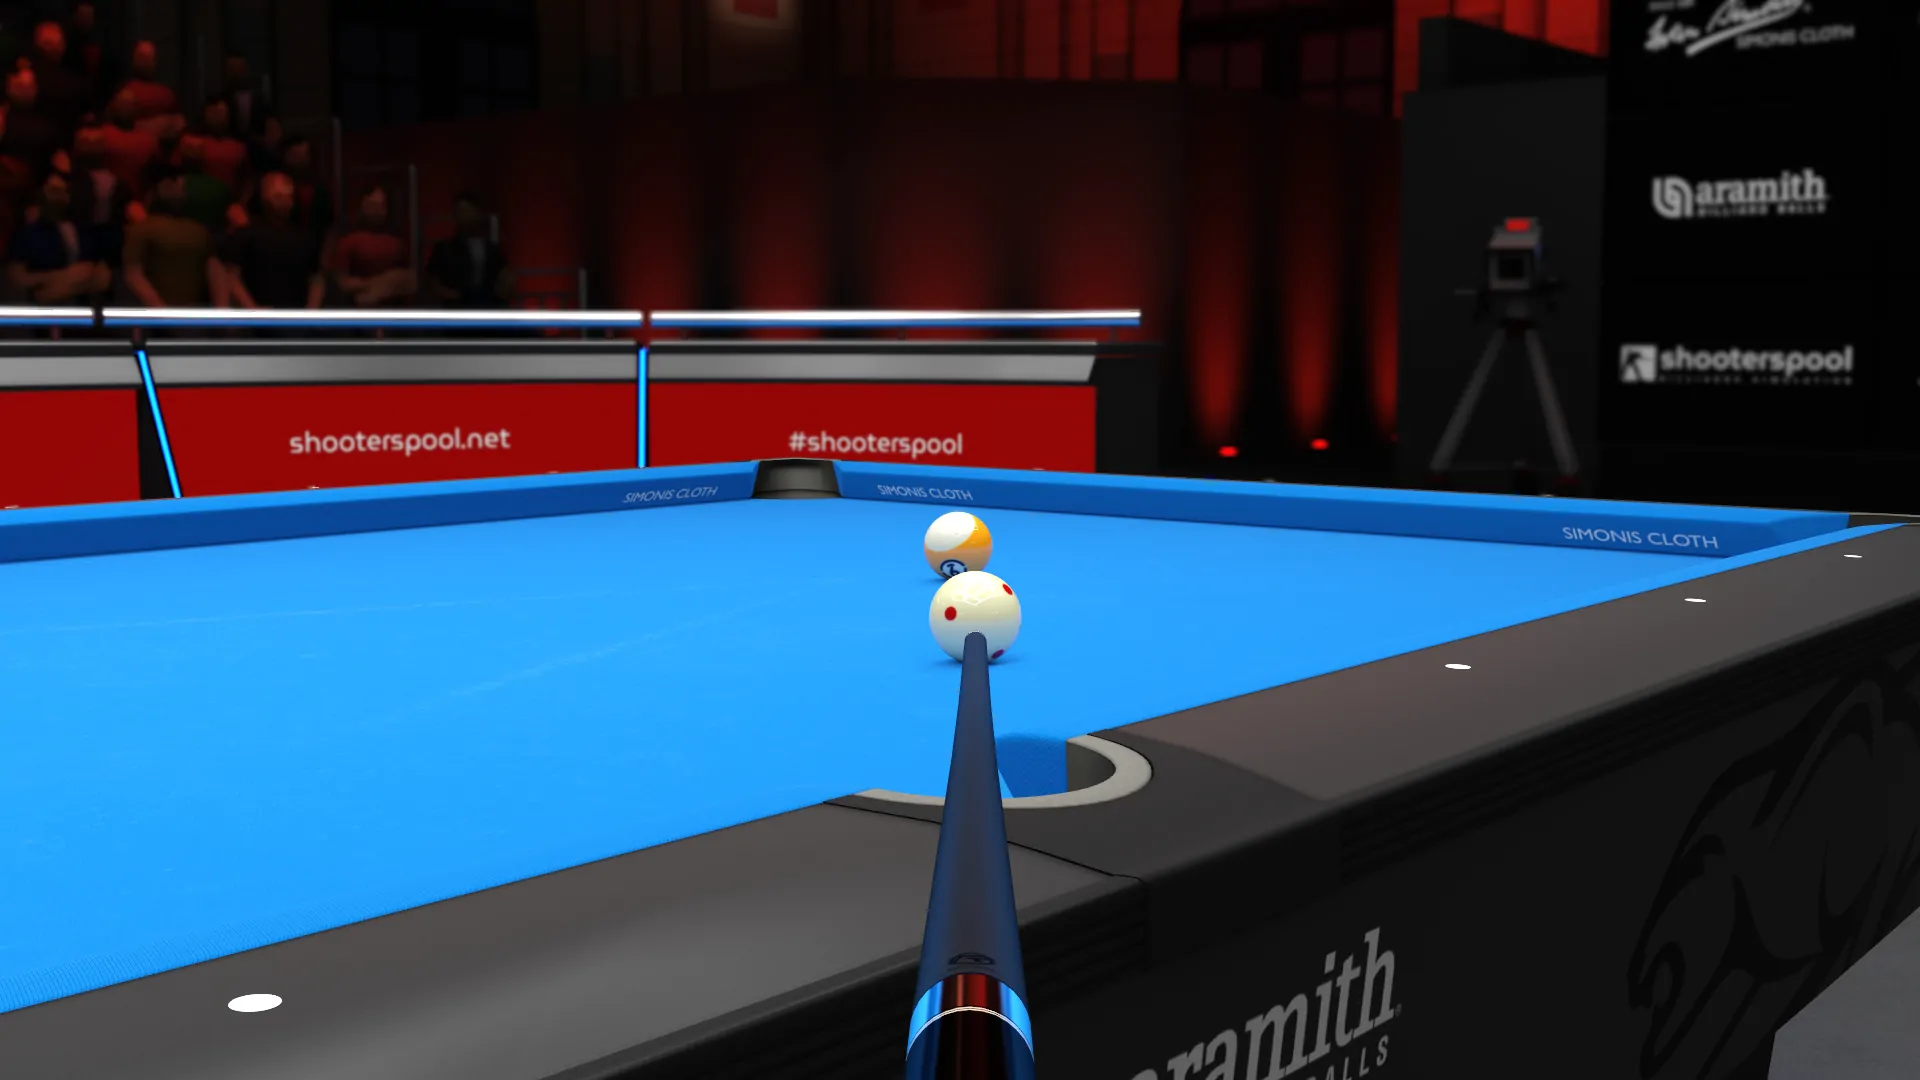 Shooterspool - Billiards Simulation